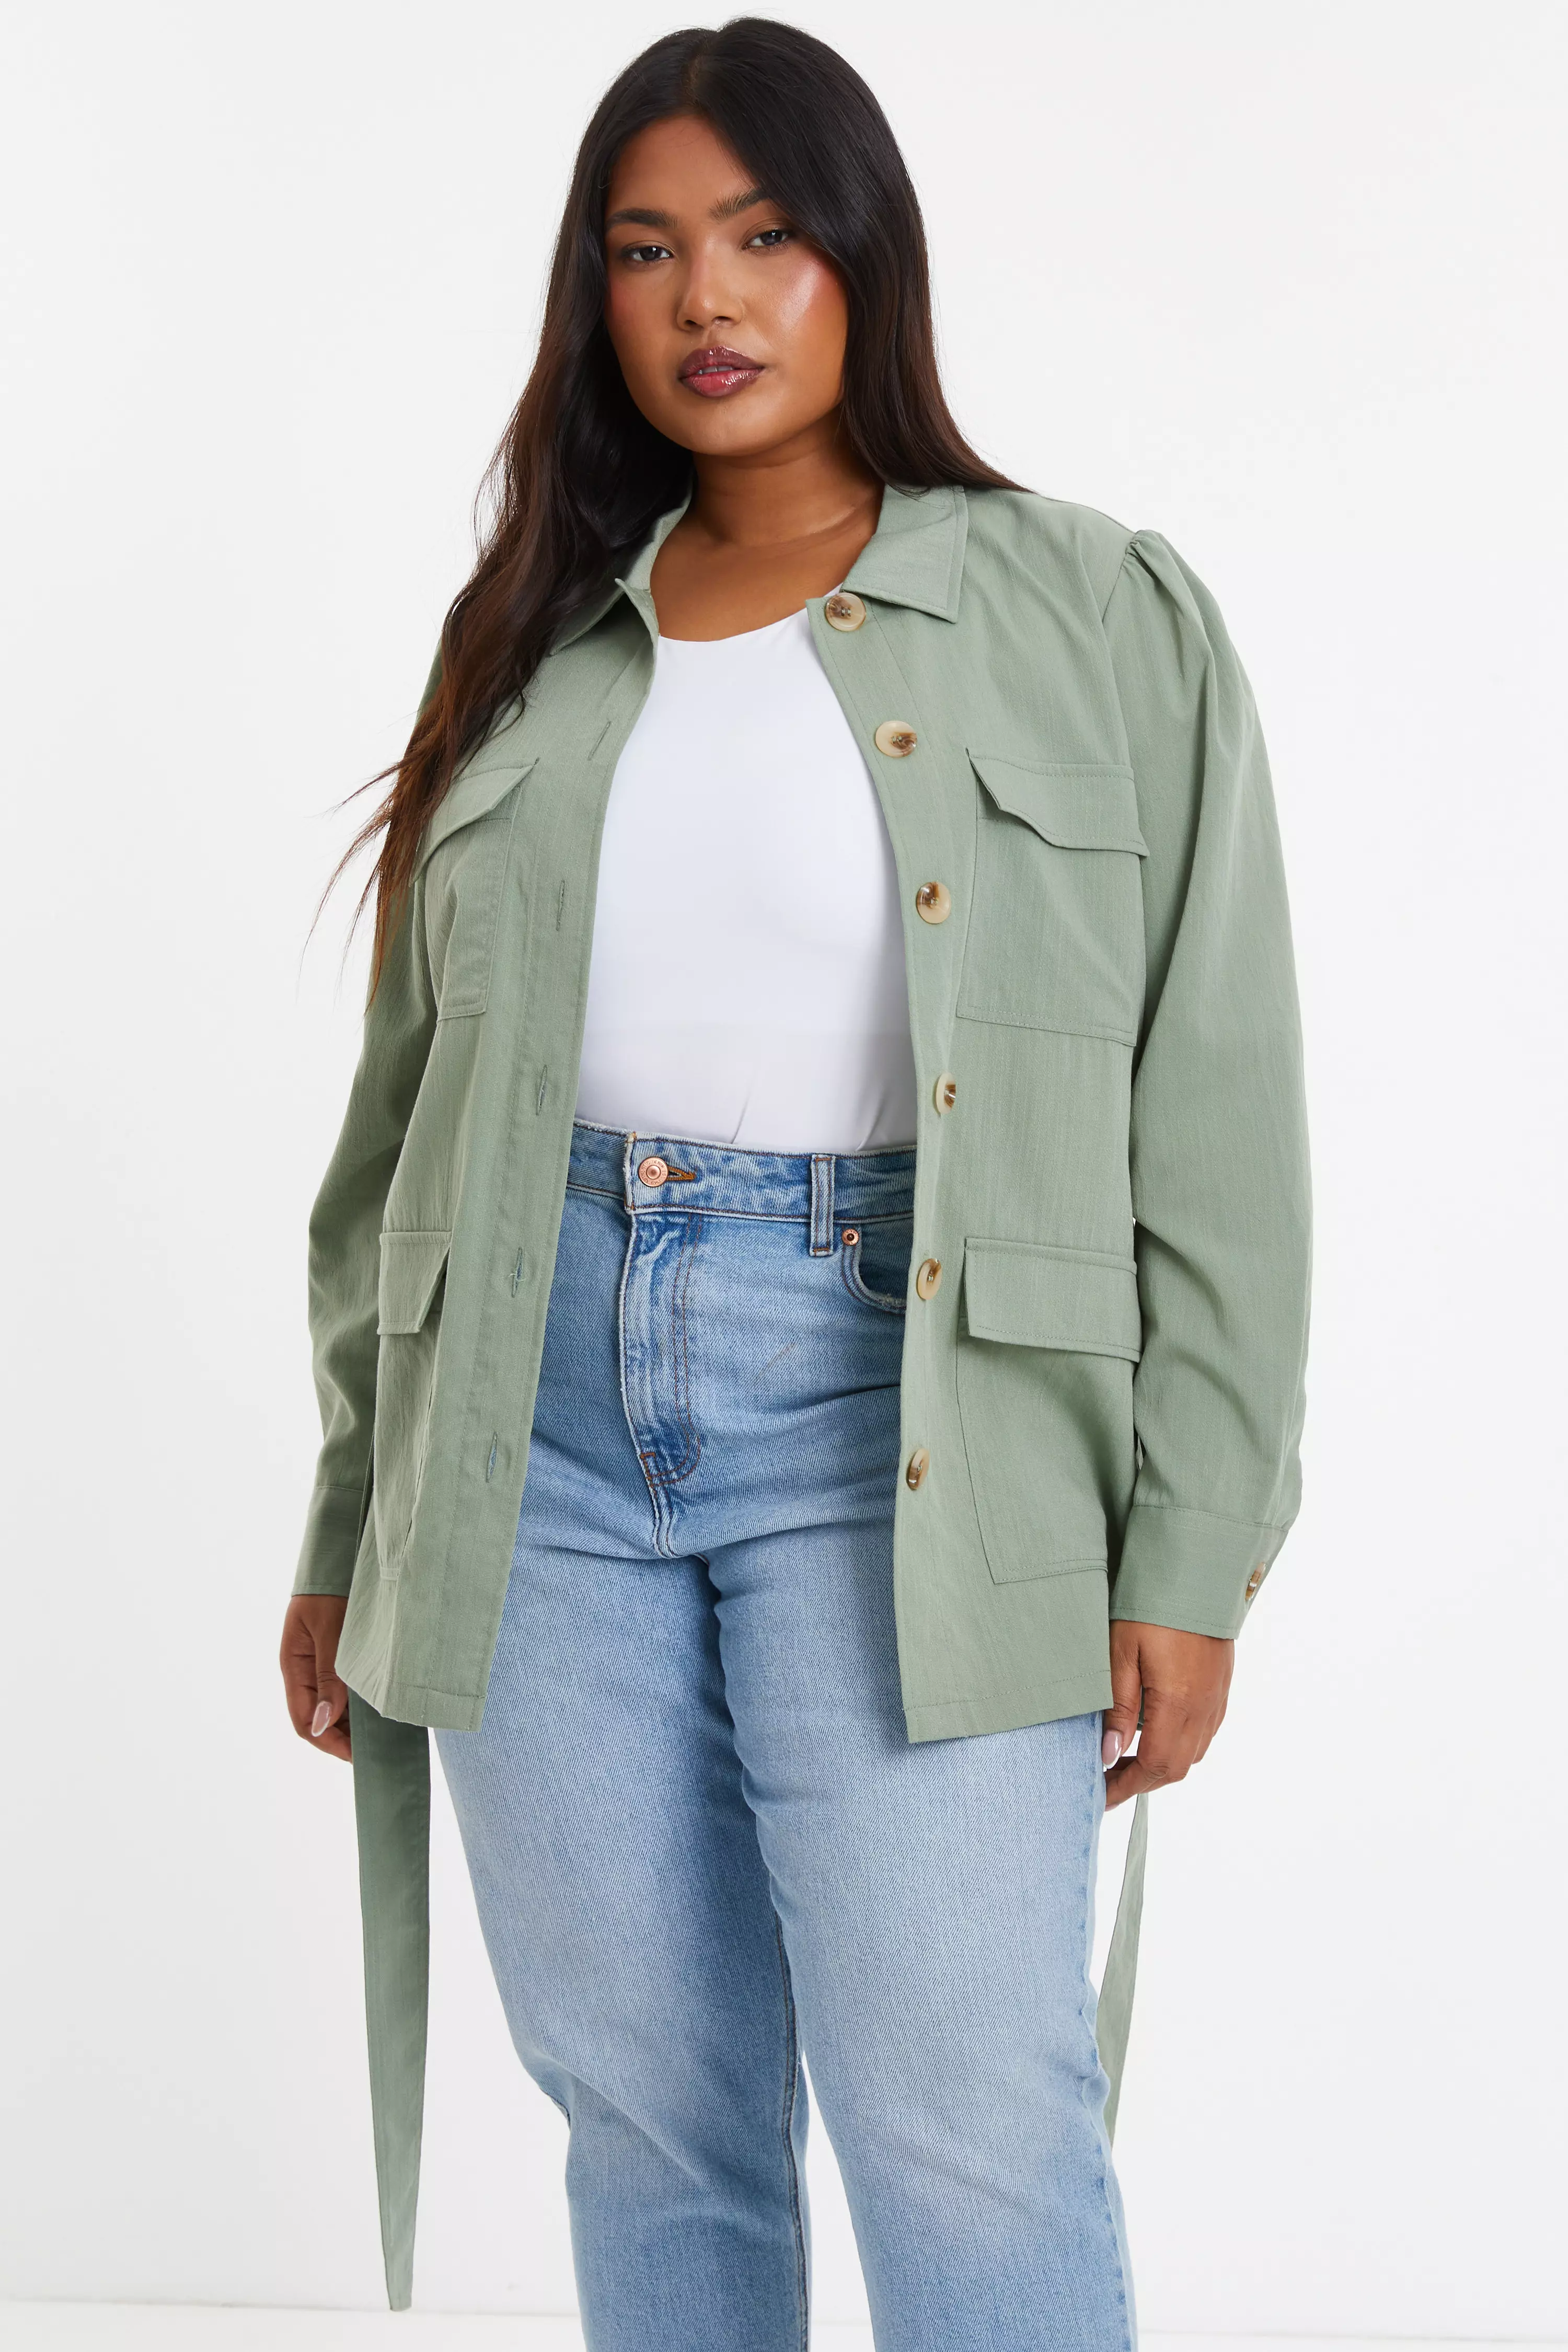 Women's Plus Size Jackets & Coats | QUIZ Curve